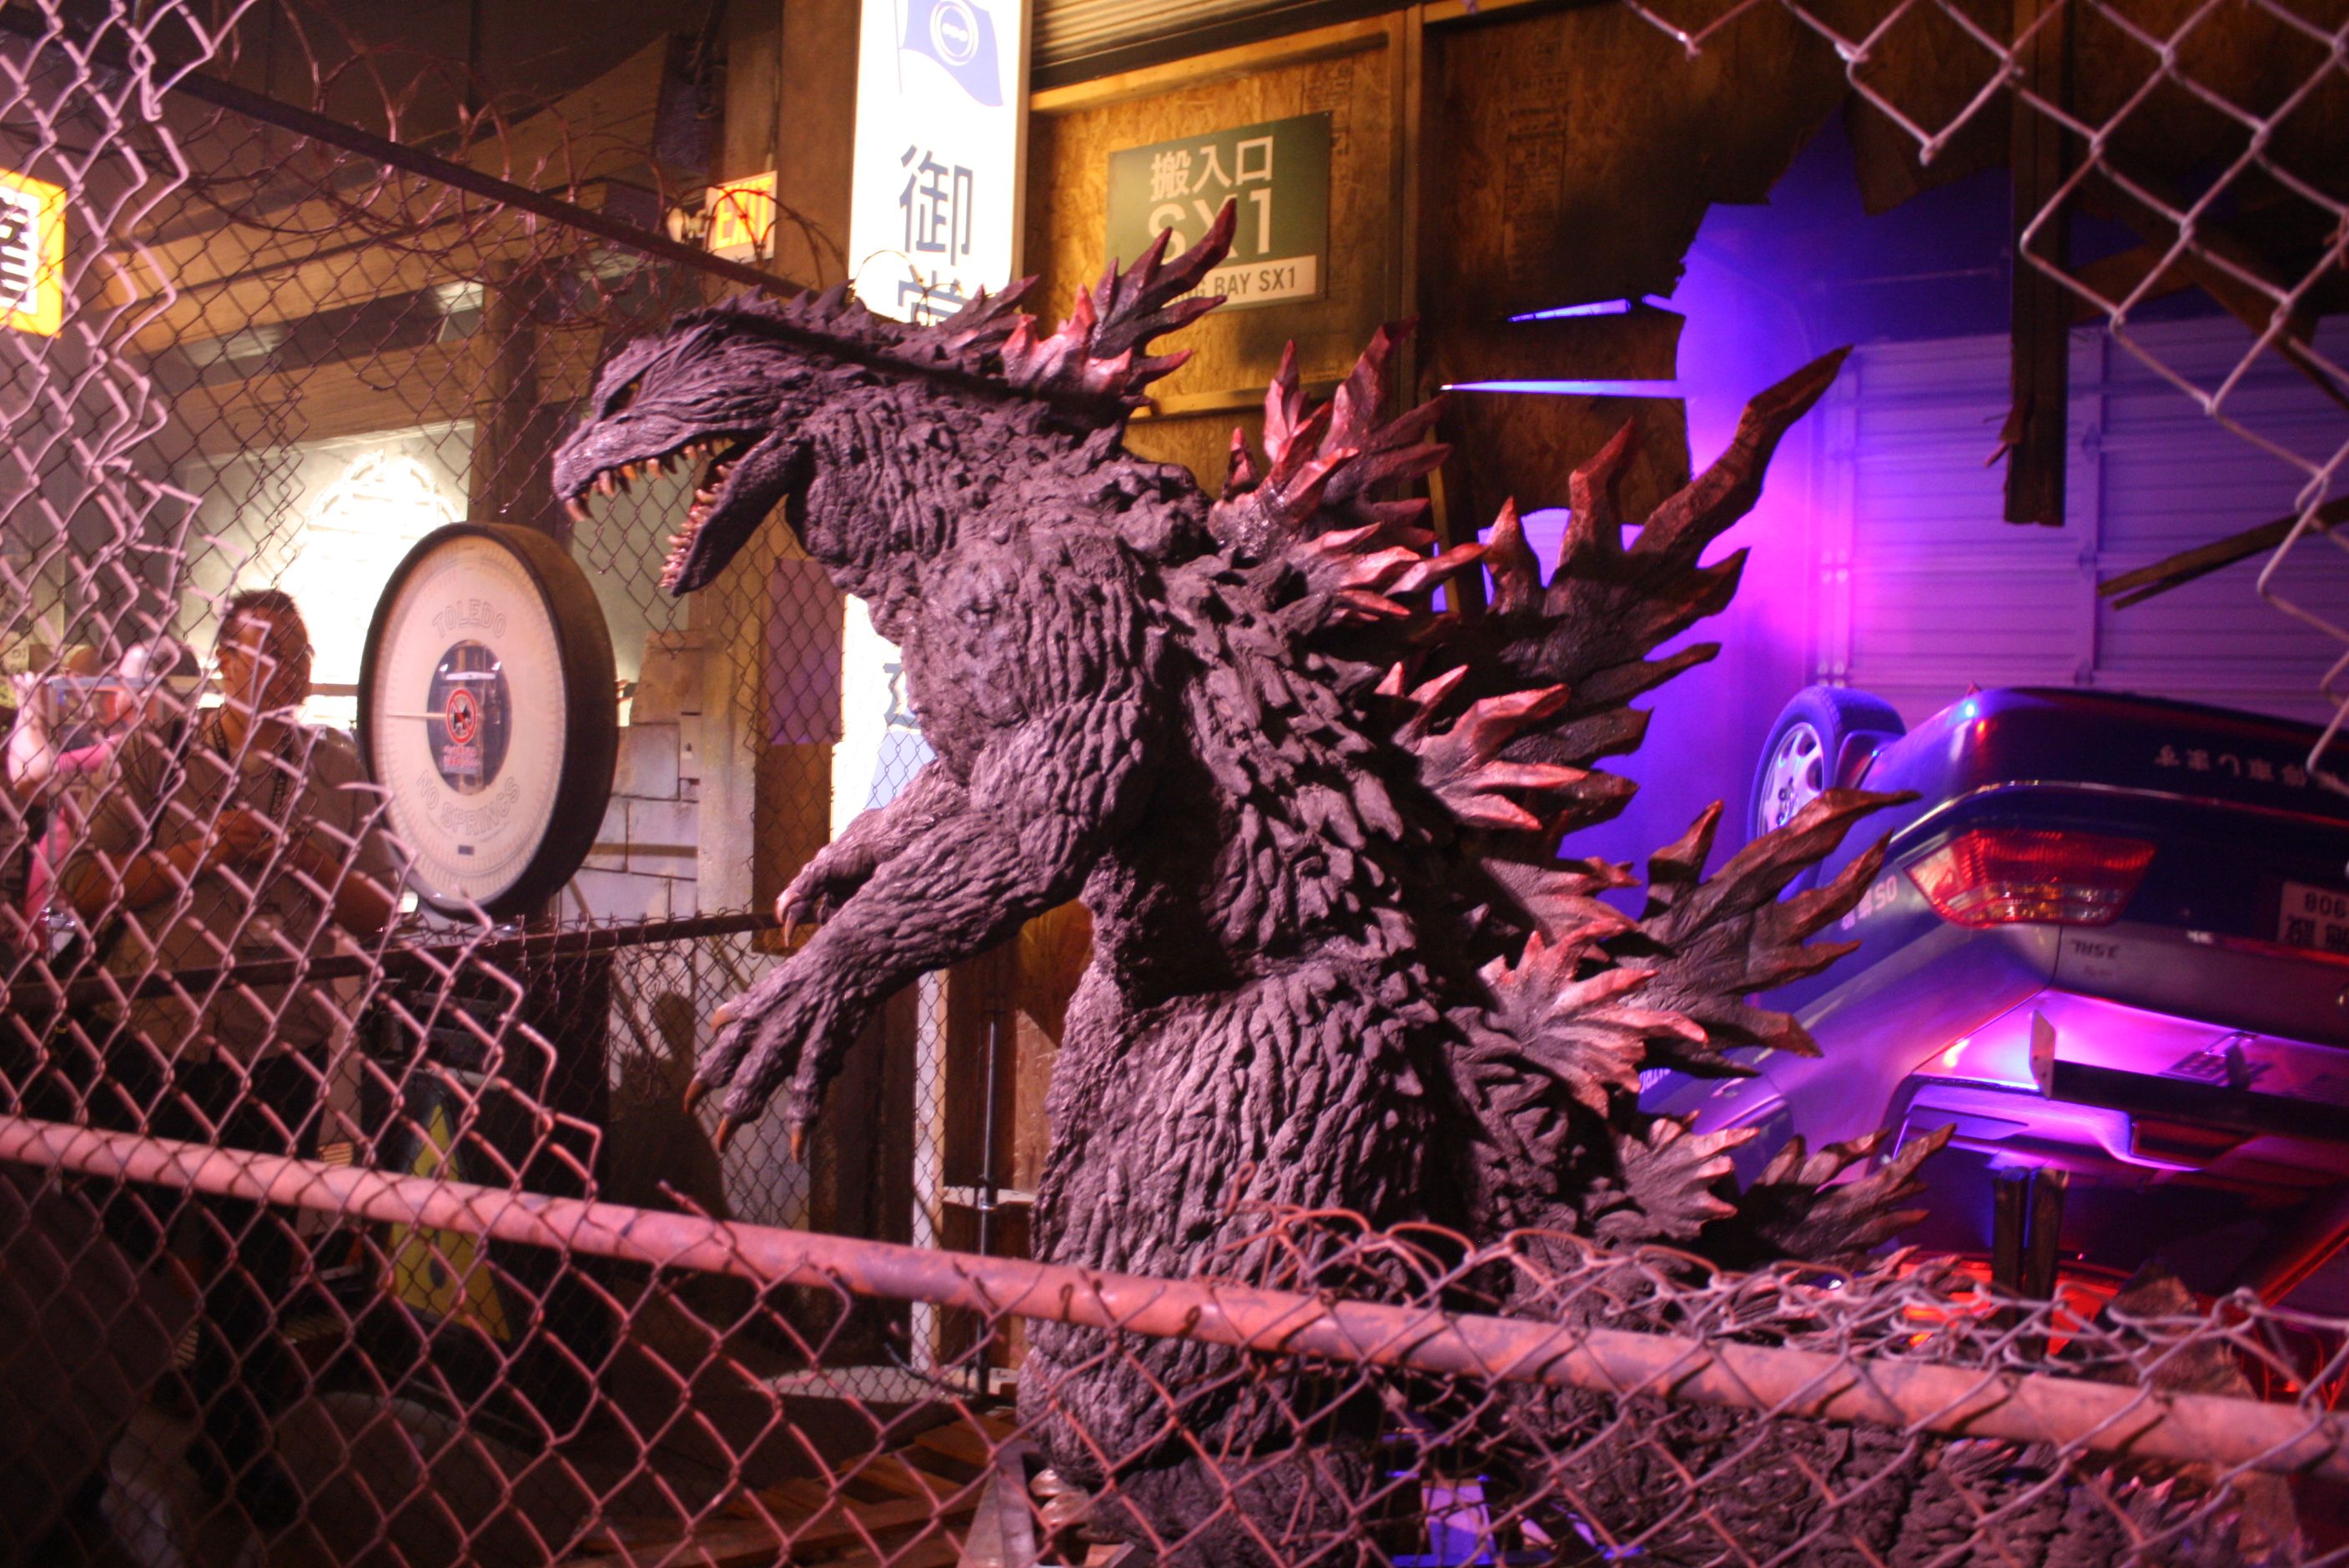 Godzilla Encounter Comic-Con 2013